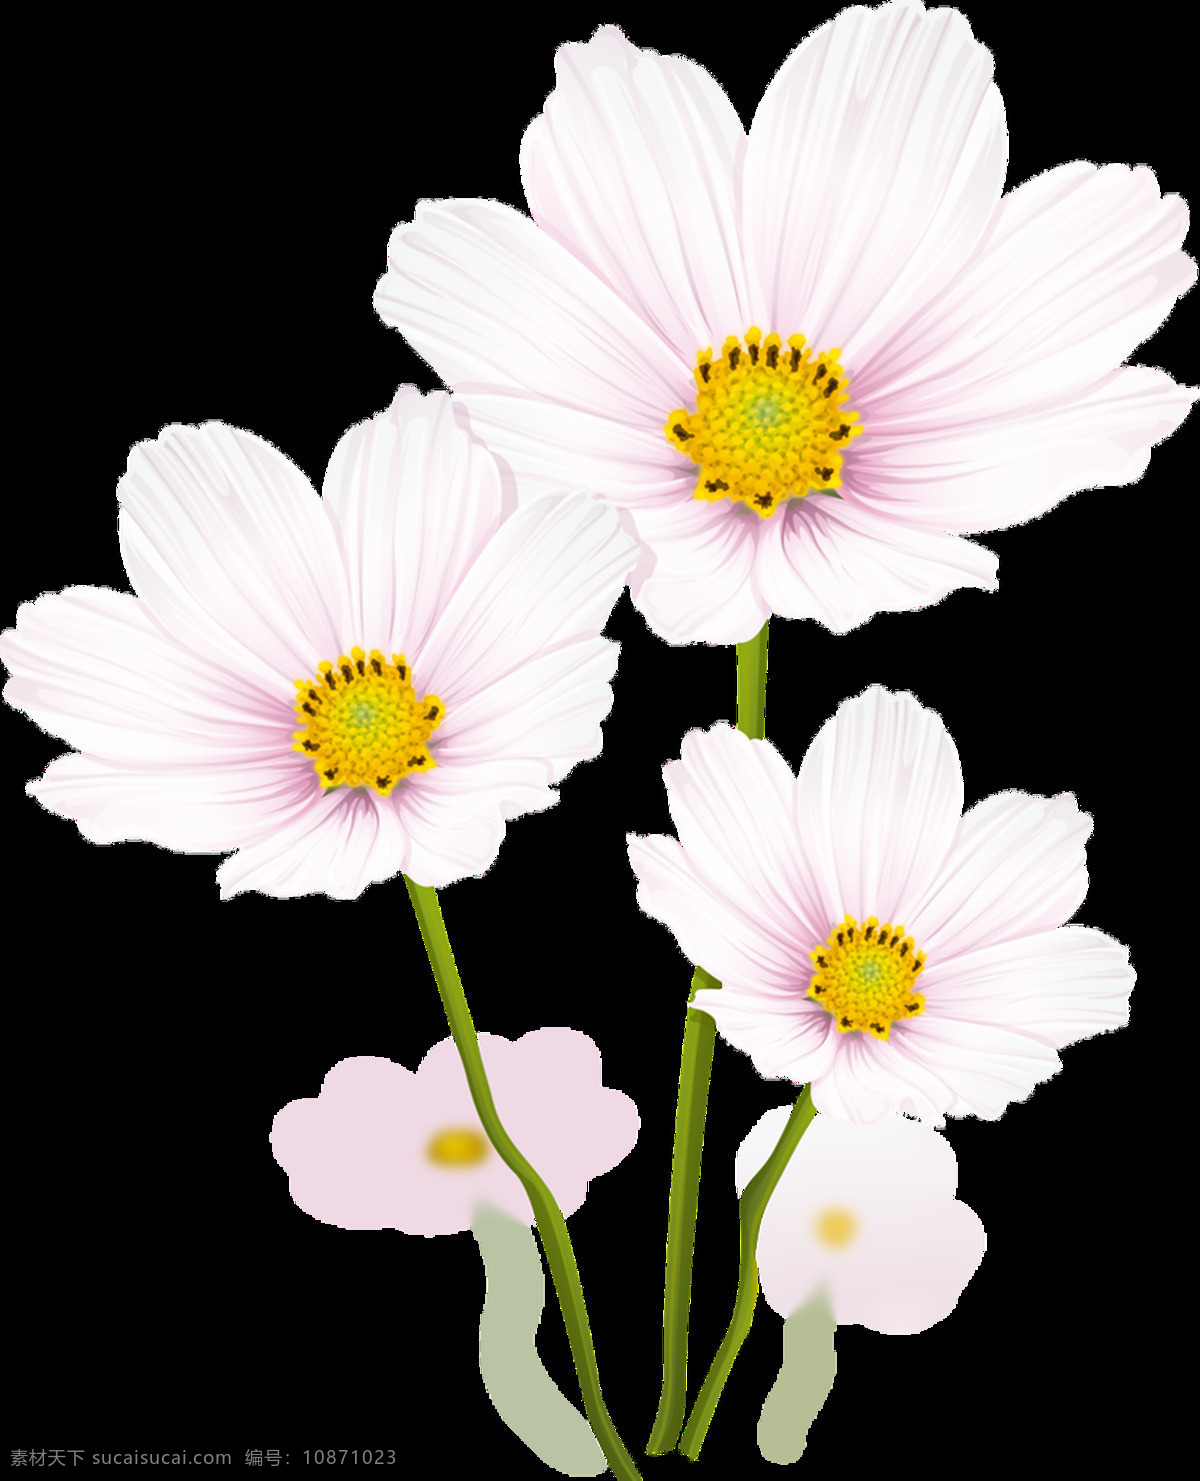 少女 系 粉色 花卉 通 透明 海报设计装饰 抠图专用 设计素材 淘宝素材 甜美 透明素材 装饰 装饰图案